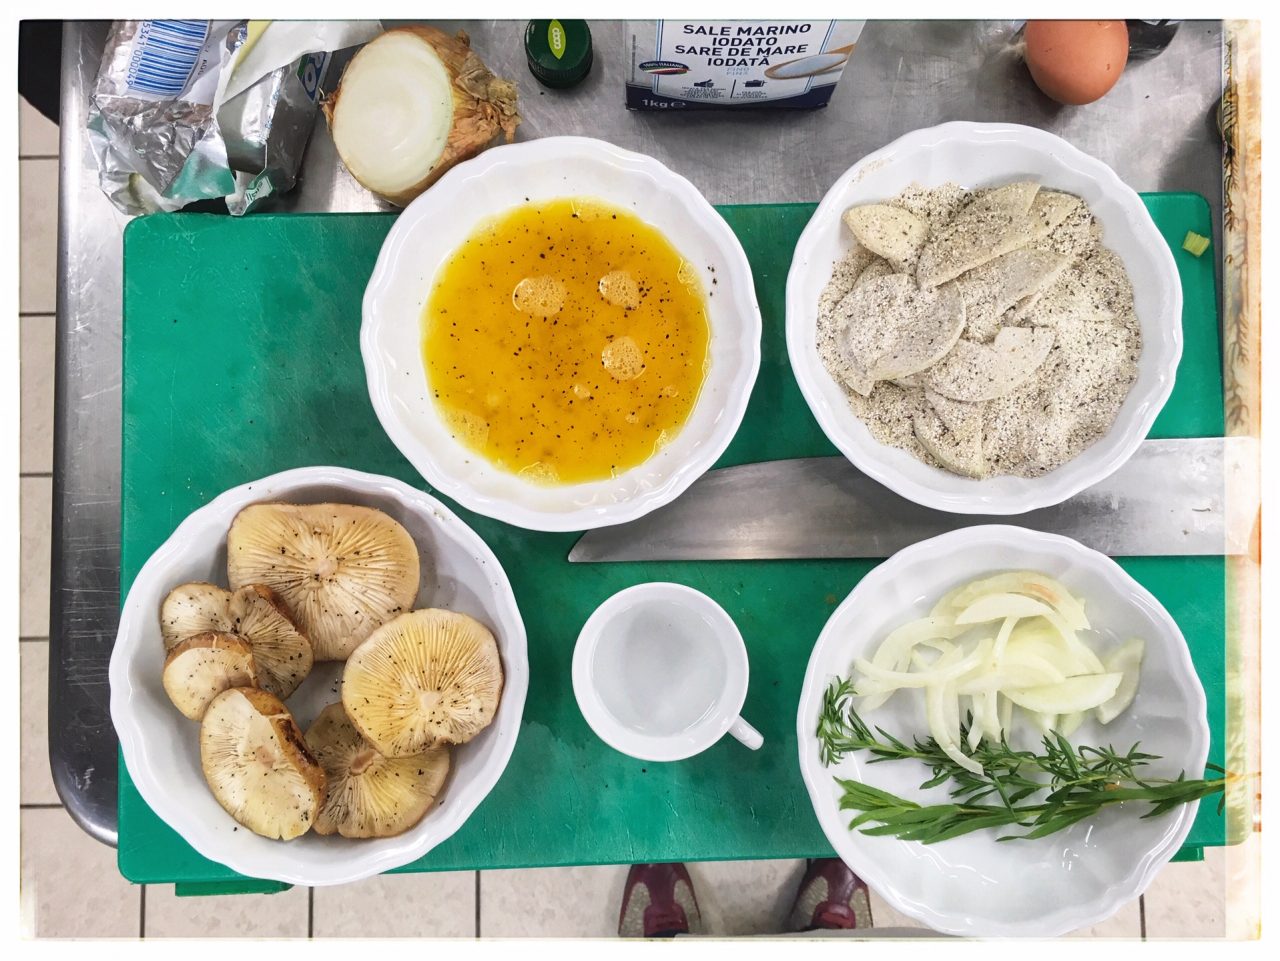 La Grappa del Trentino nel piatto: Palazzo Roccabruna kitchen. Prepping pears with buckwheat flour, grappa bianca and shitake mushrooms